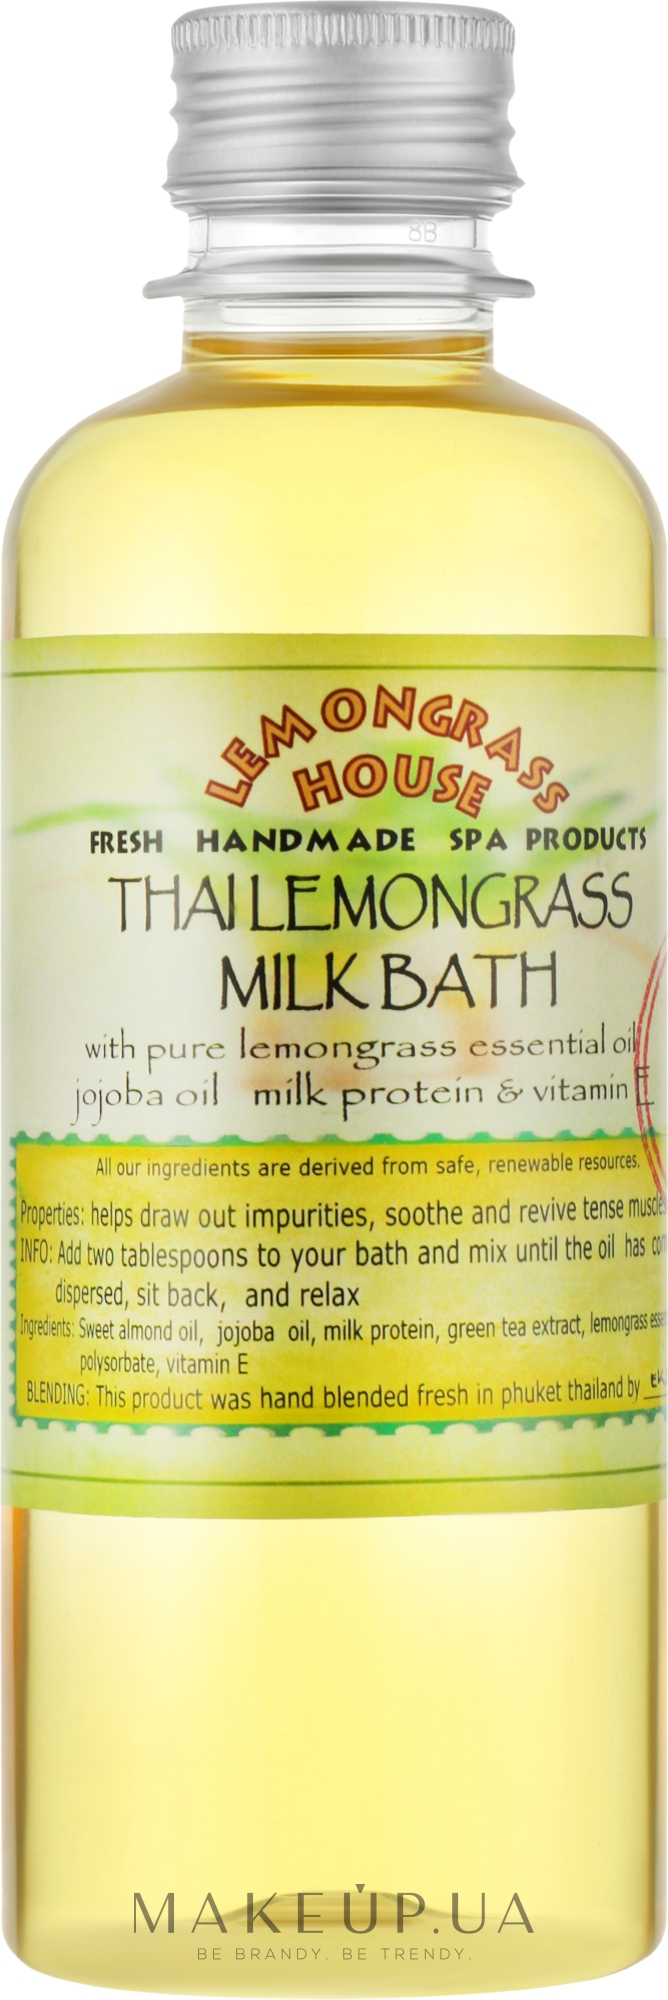 Молочная ванна "Лемонграсс" - Lemongrass House Thai Lemongrass Milk Bath — фото 250ml